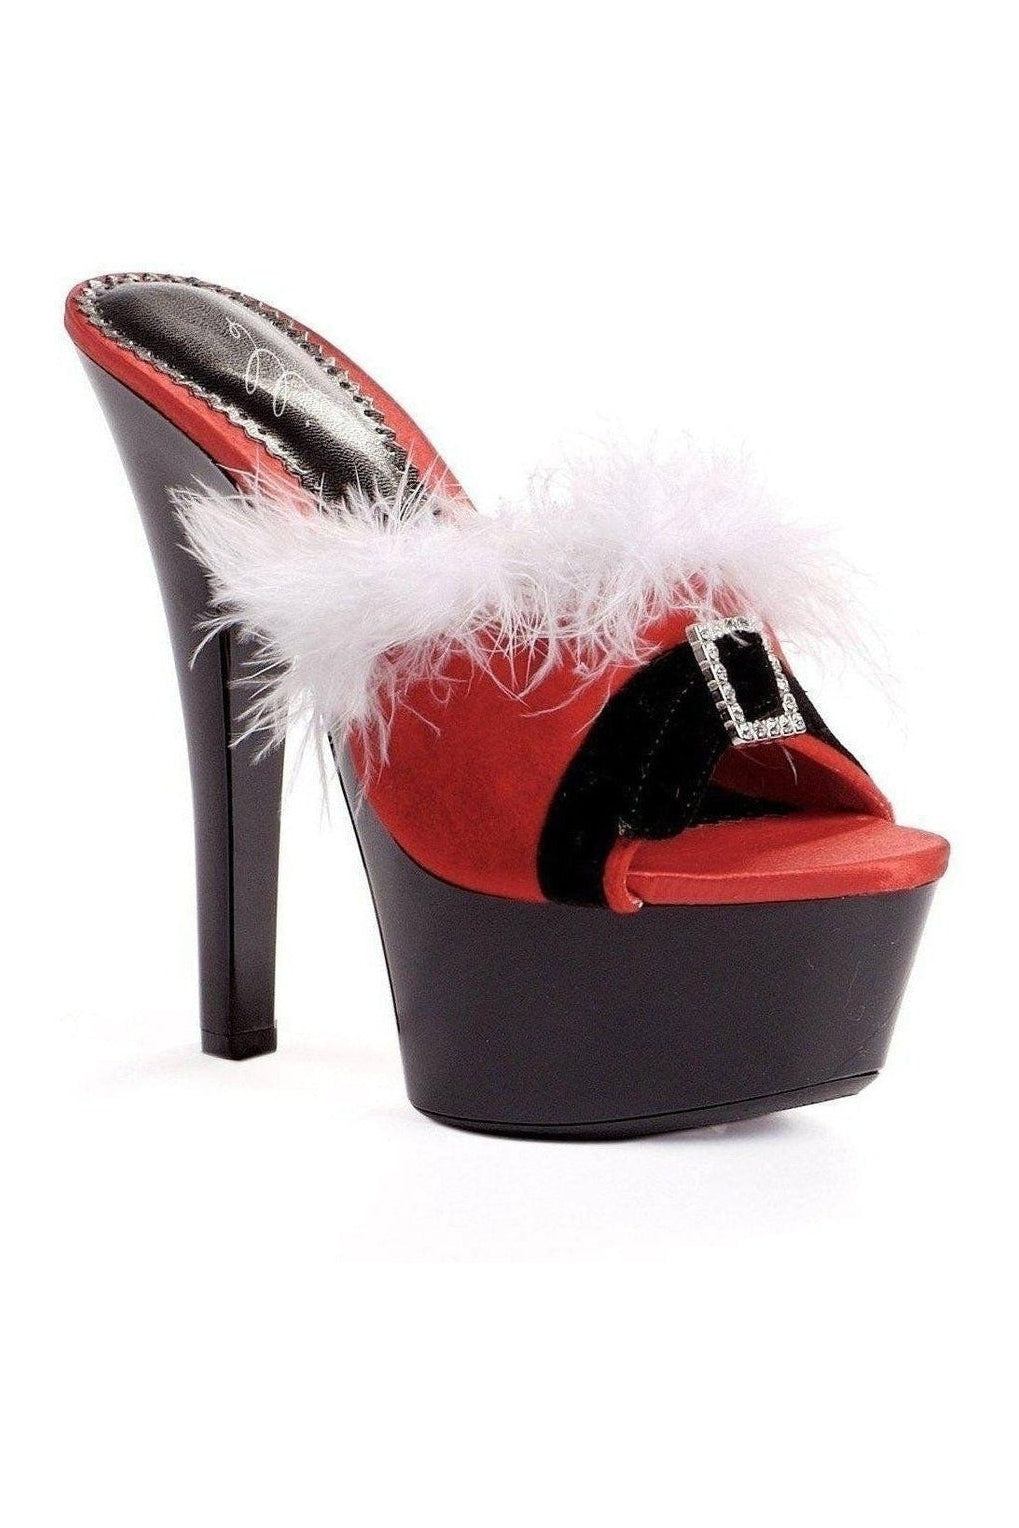 601-PLUSH Slide | Black Patent-Ellie Shoes-SEXYSHOES.COM